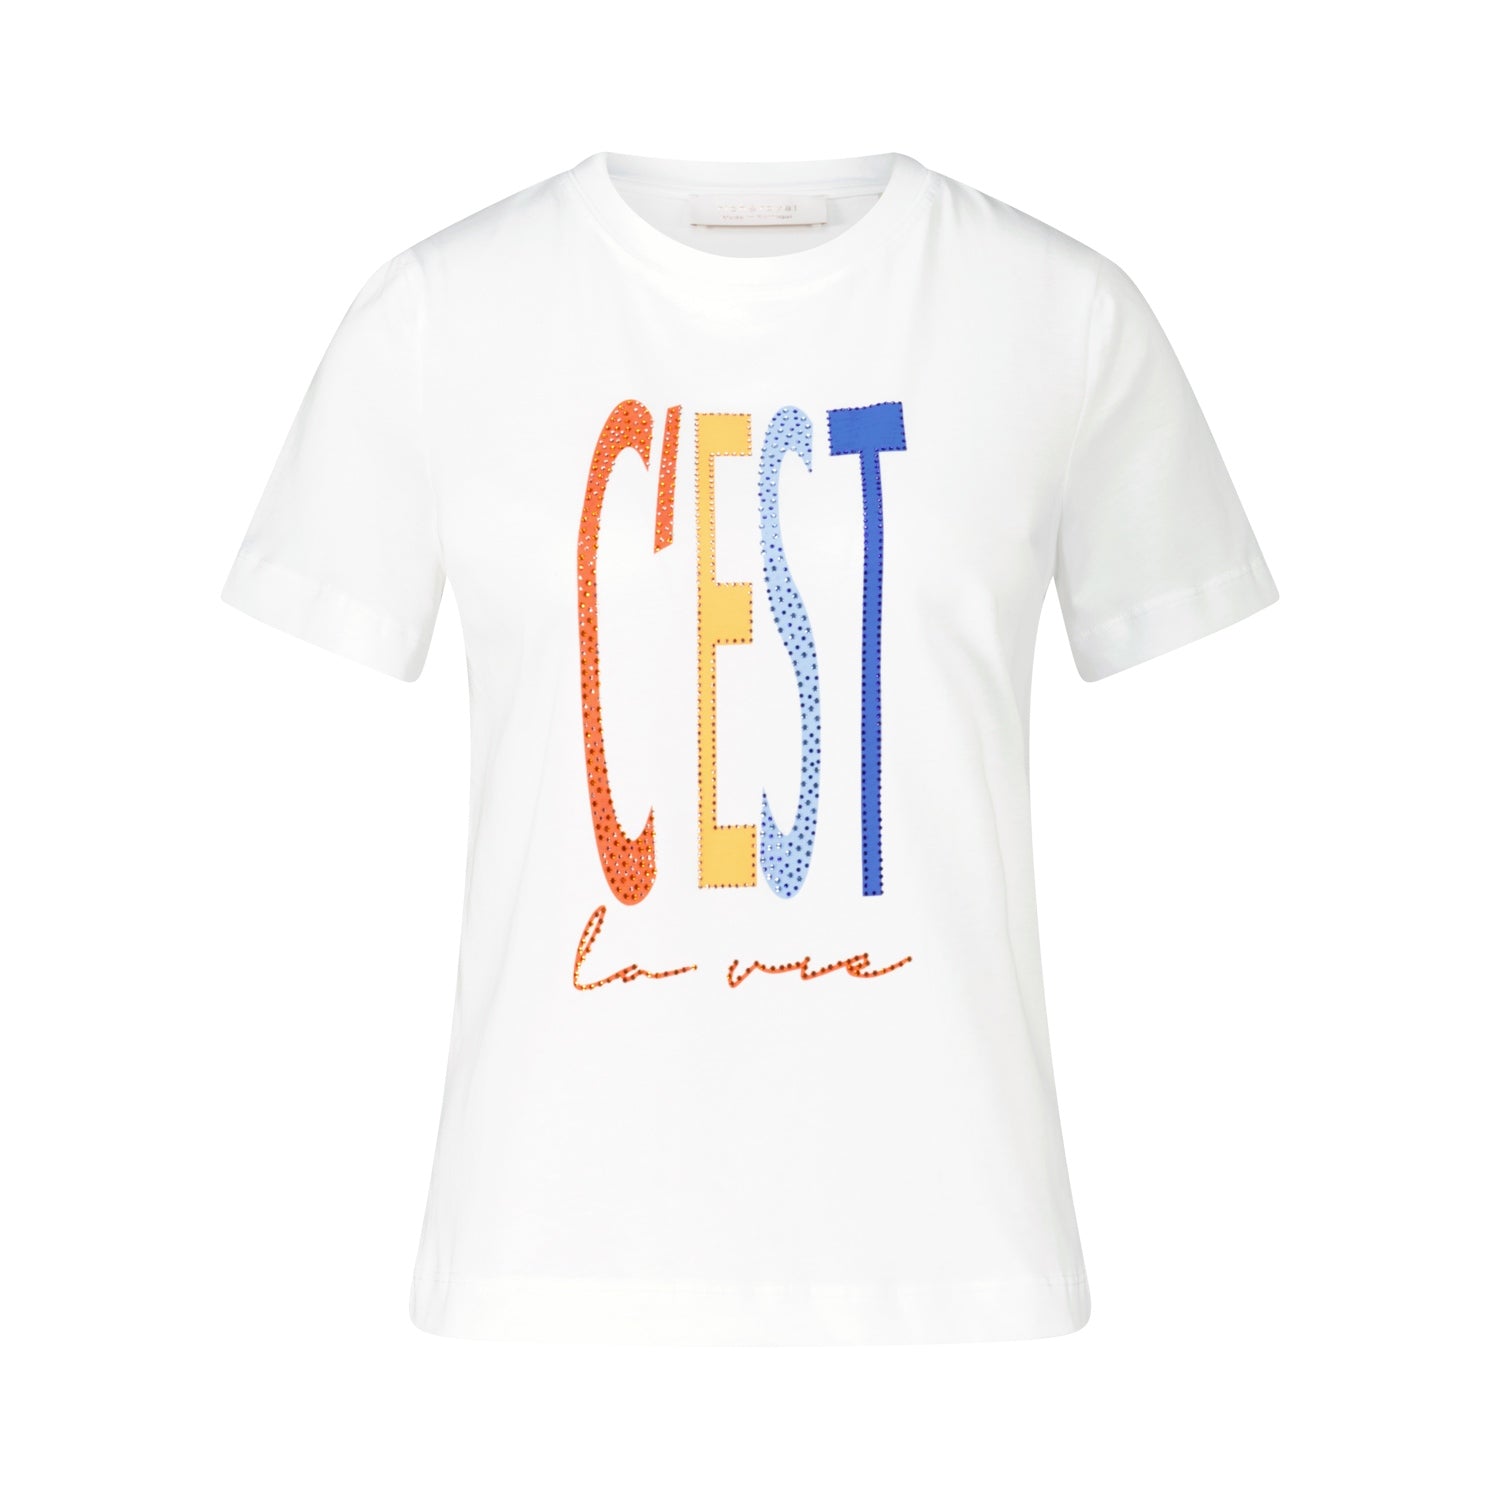 T-Shirt "C'EST LA VIE" mit Strass